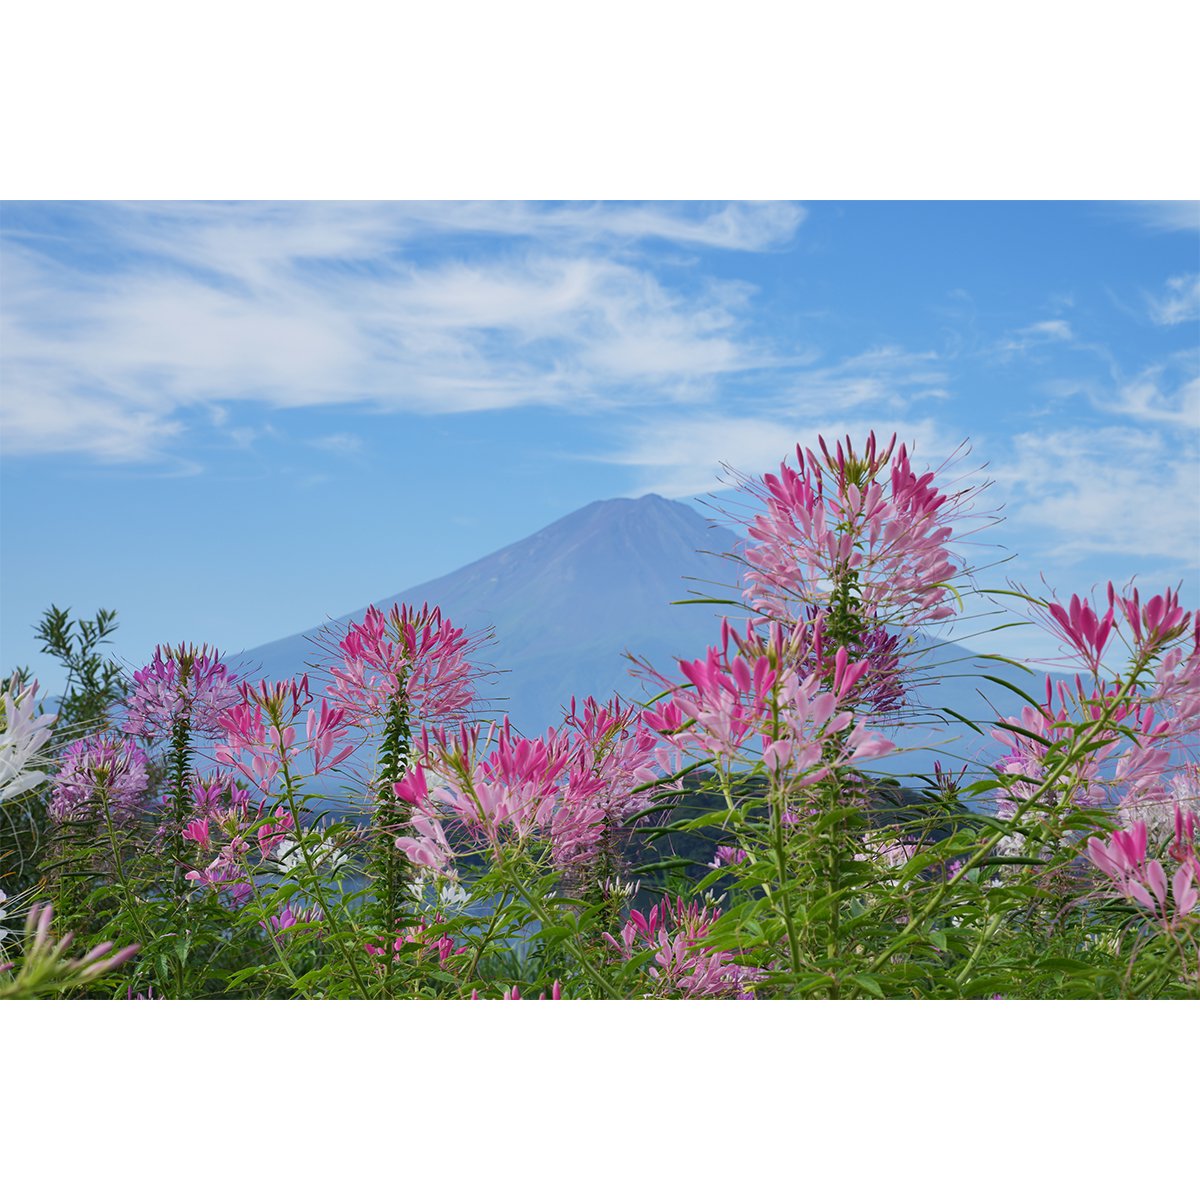 テラウチマサト作品<br>「LETTERS〜一緒に見た富士山〜#006」<br>A3サイズ